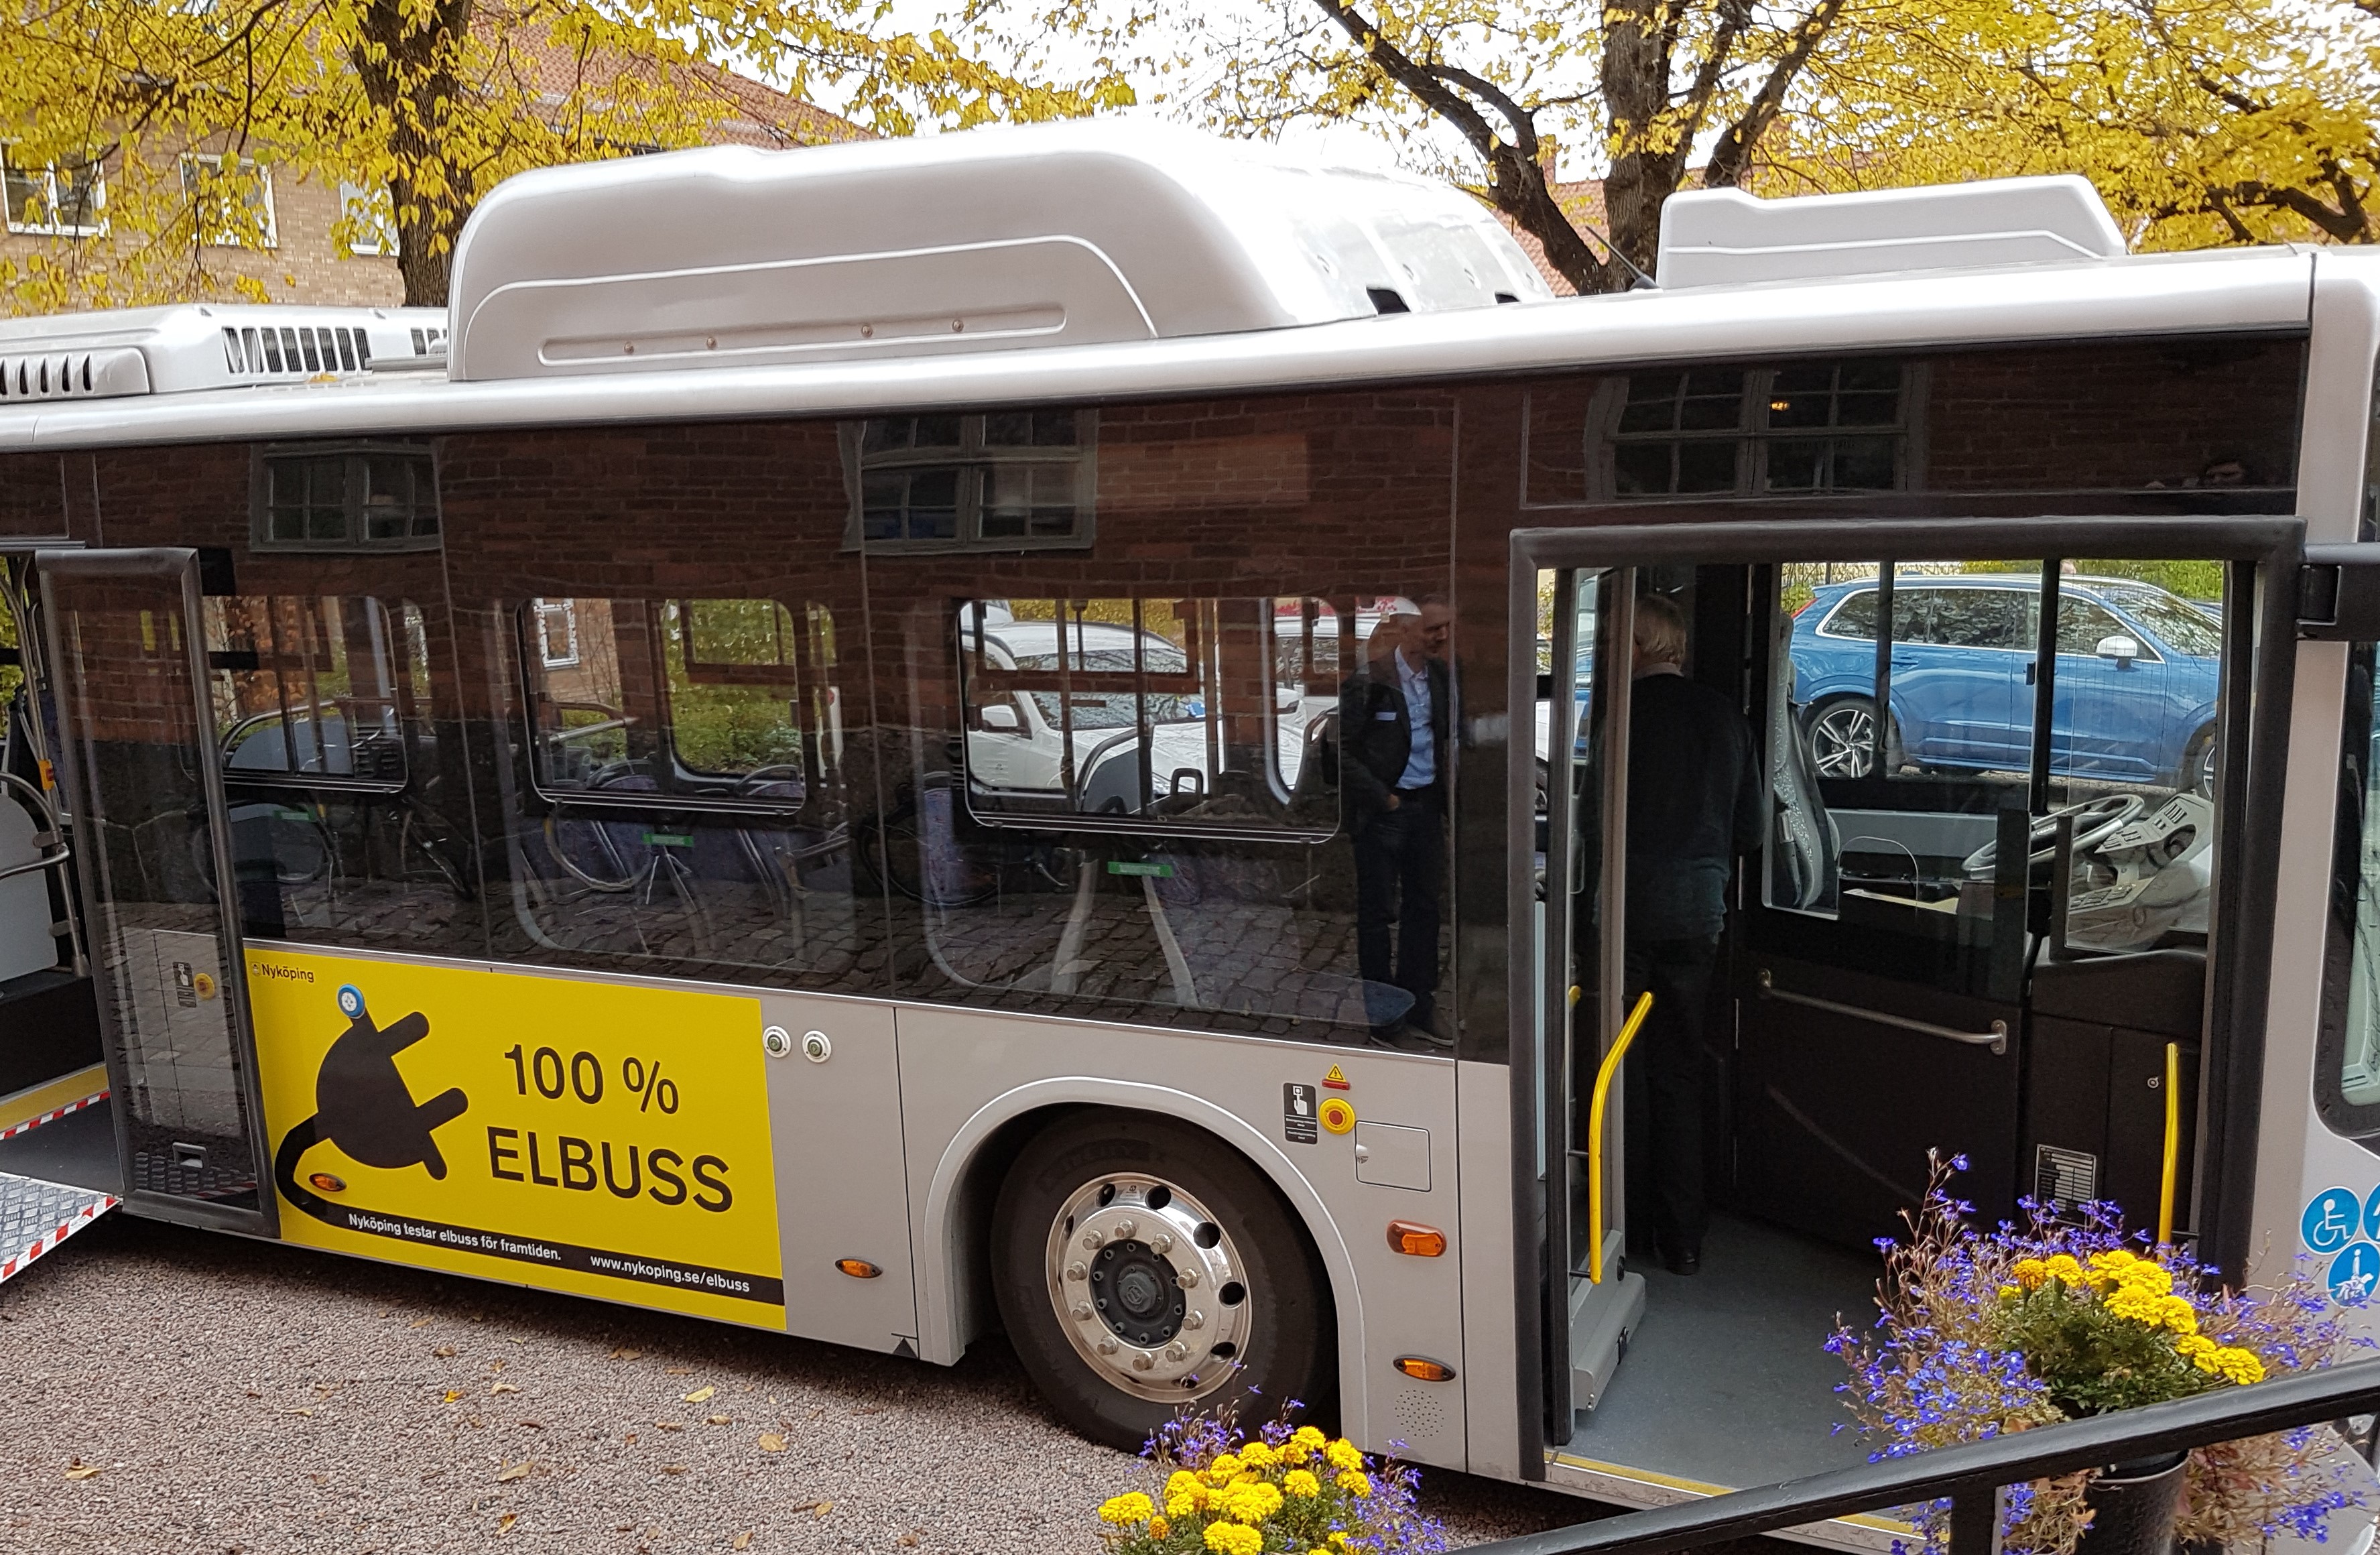 Anbud365: Tror mer på funksjonskrav enn standardisering for å kutte busskostnader